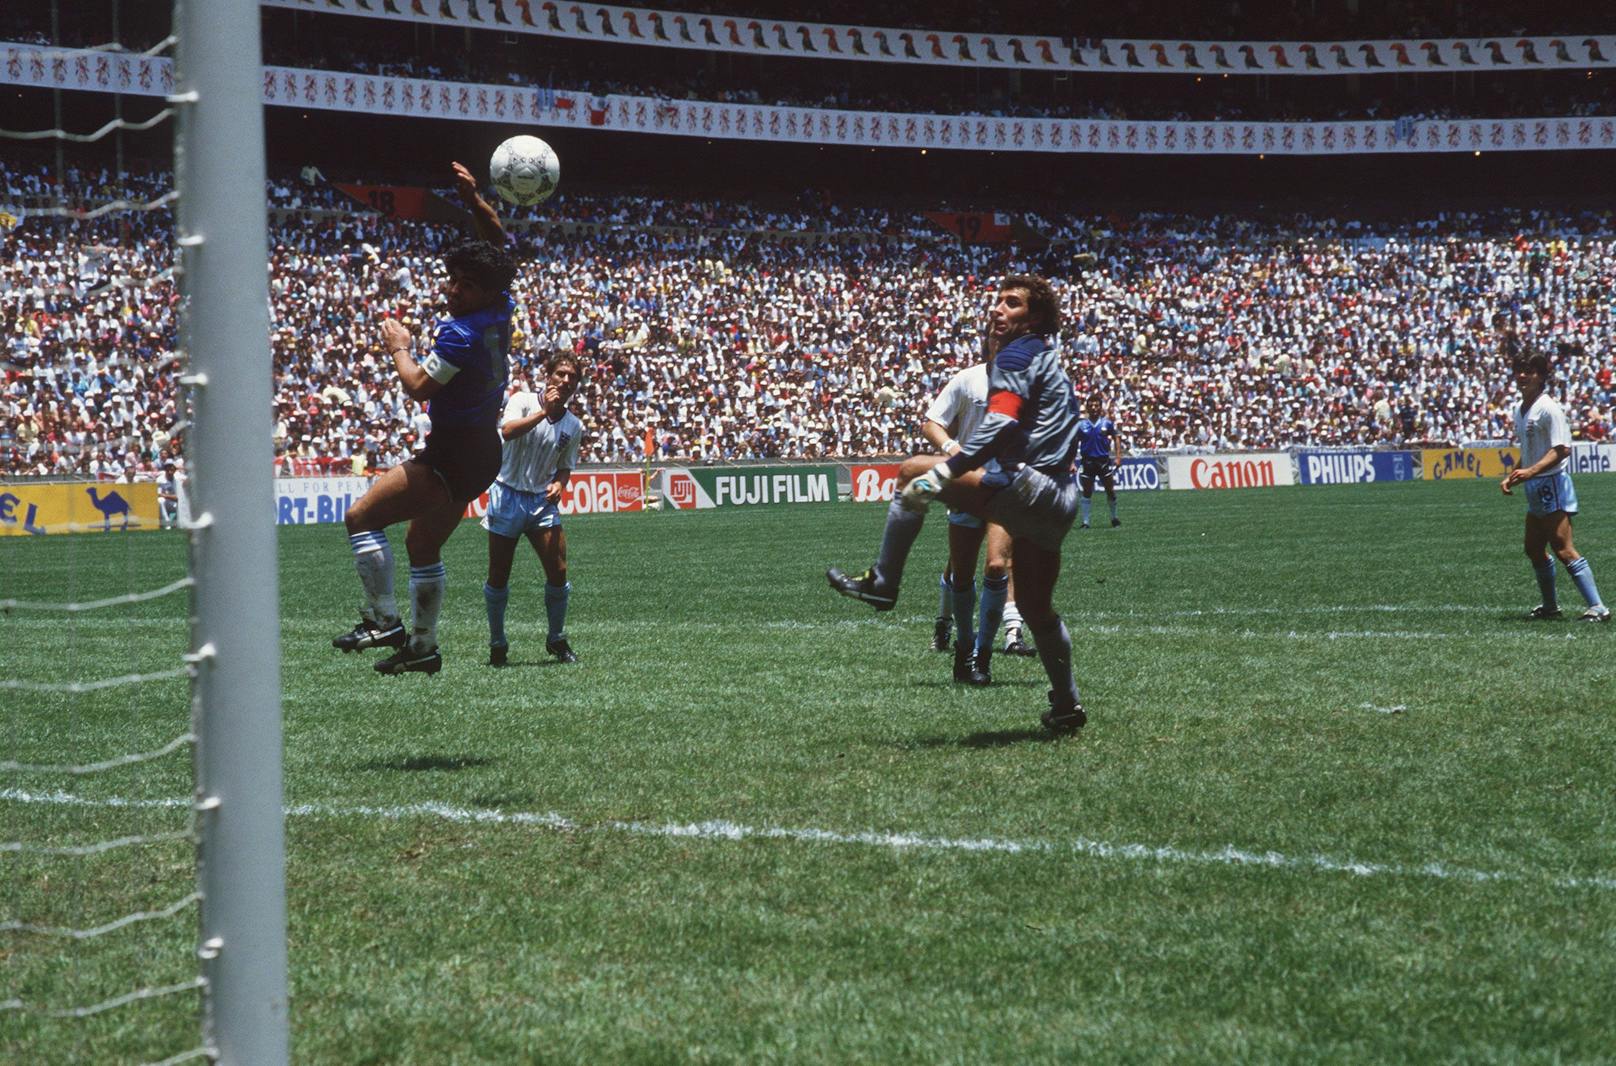 1986 schießt Maradona bei der WM sein legendäres Tor, das ihm den Spitznamen "Hand Gottes" einbringt. Argentinien gewinnt mit seinem Spielmacher die Weltmeisterschaft – die Krönung seiner Karriere.